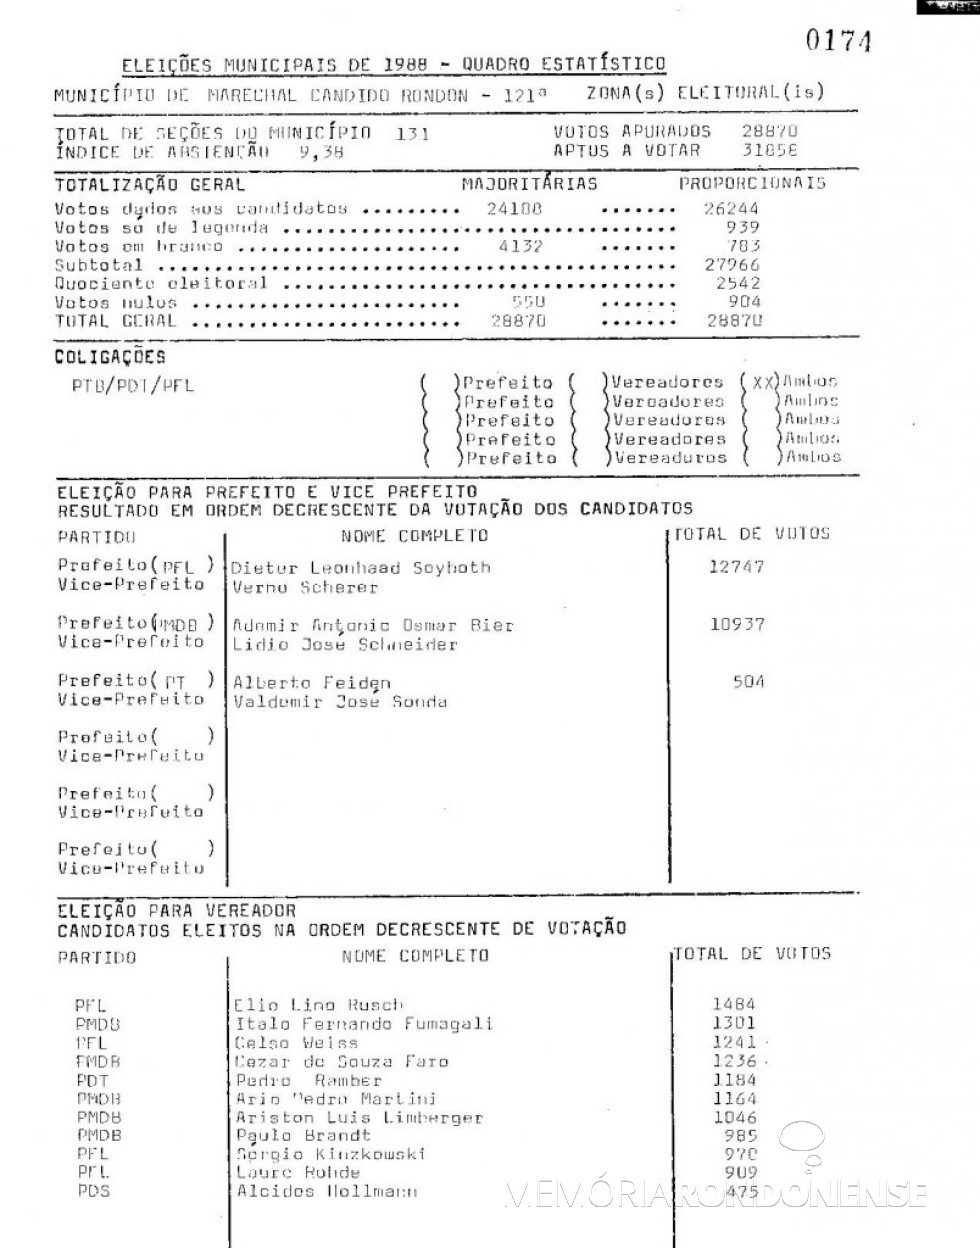 Boletim do TRE-PR (1ª parte) com resultado das eleições municipais de Marechal Cândido Rondon de 1988. Imagem: Acervo TRE-PR - FOTO 8 - 